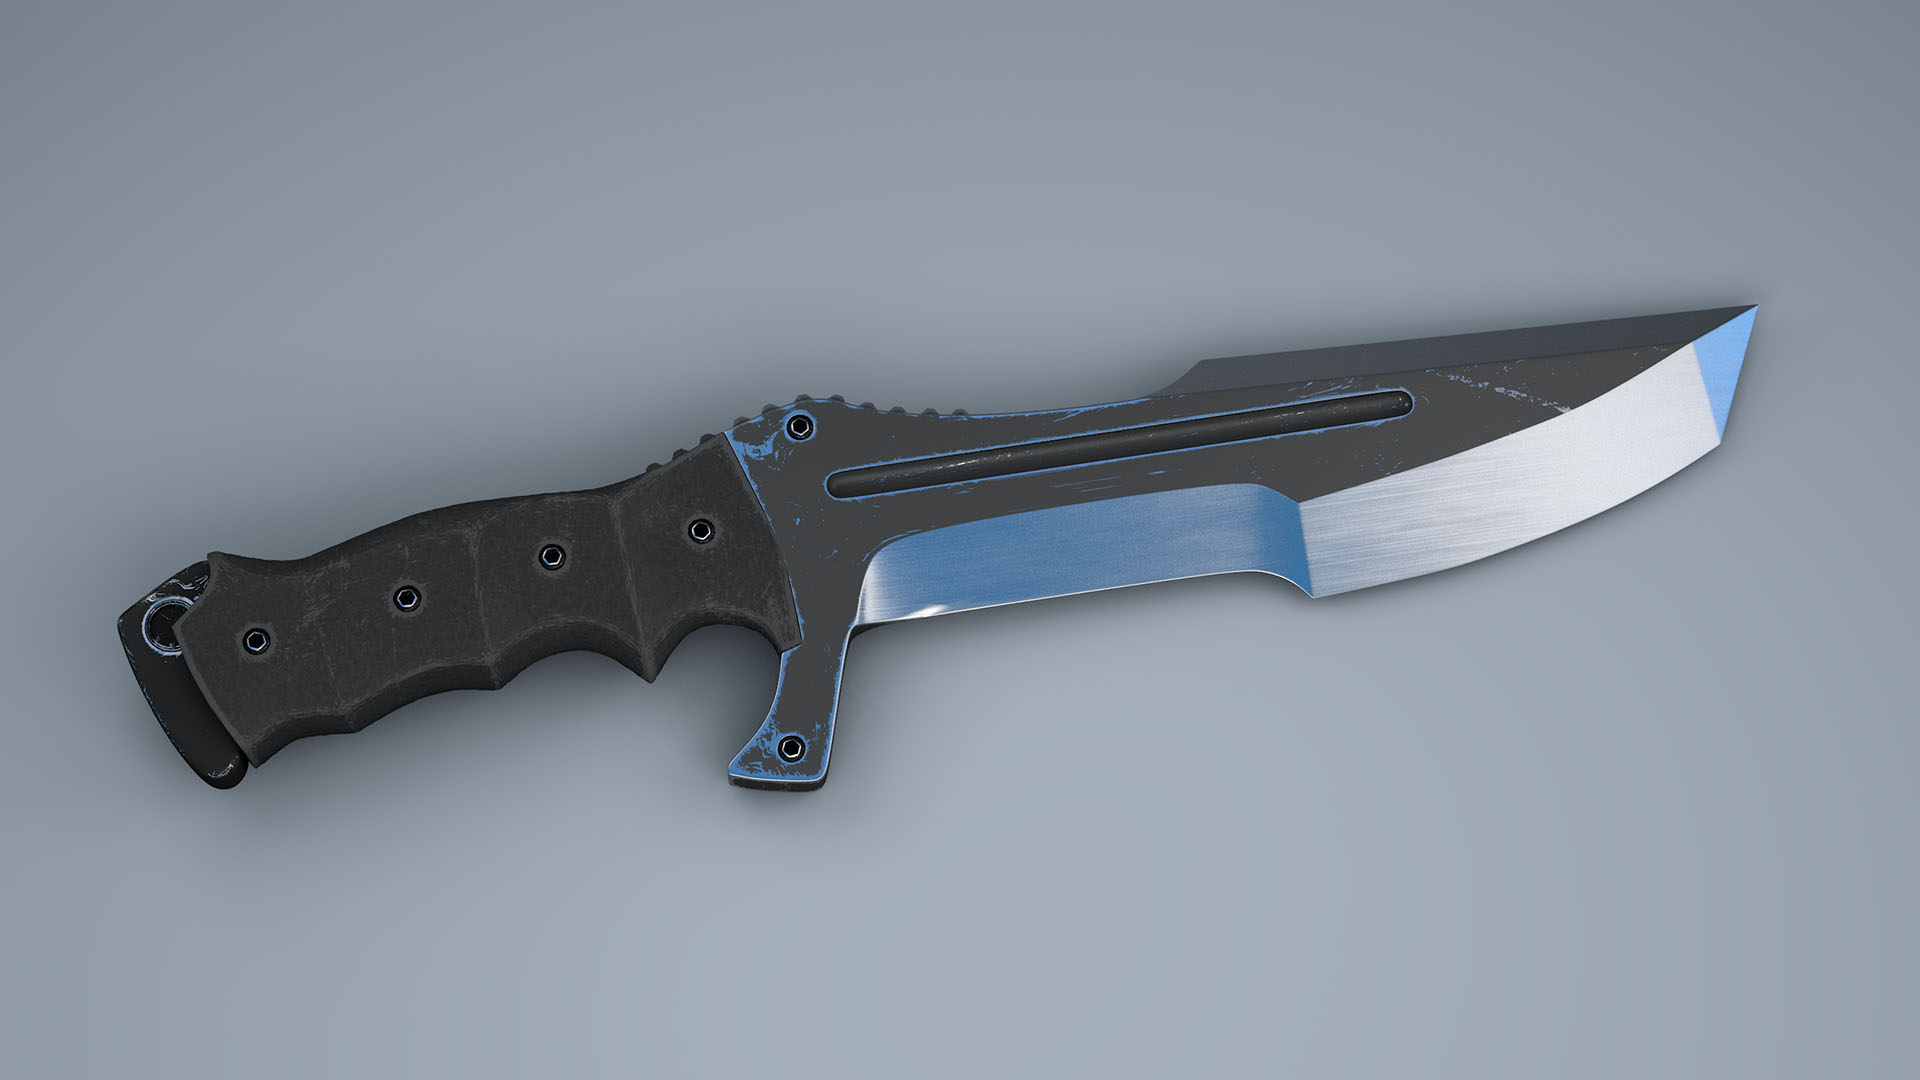 Halo Combat Knife